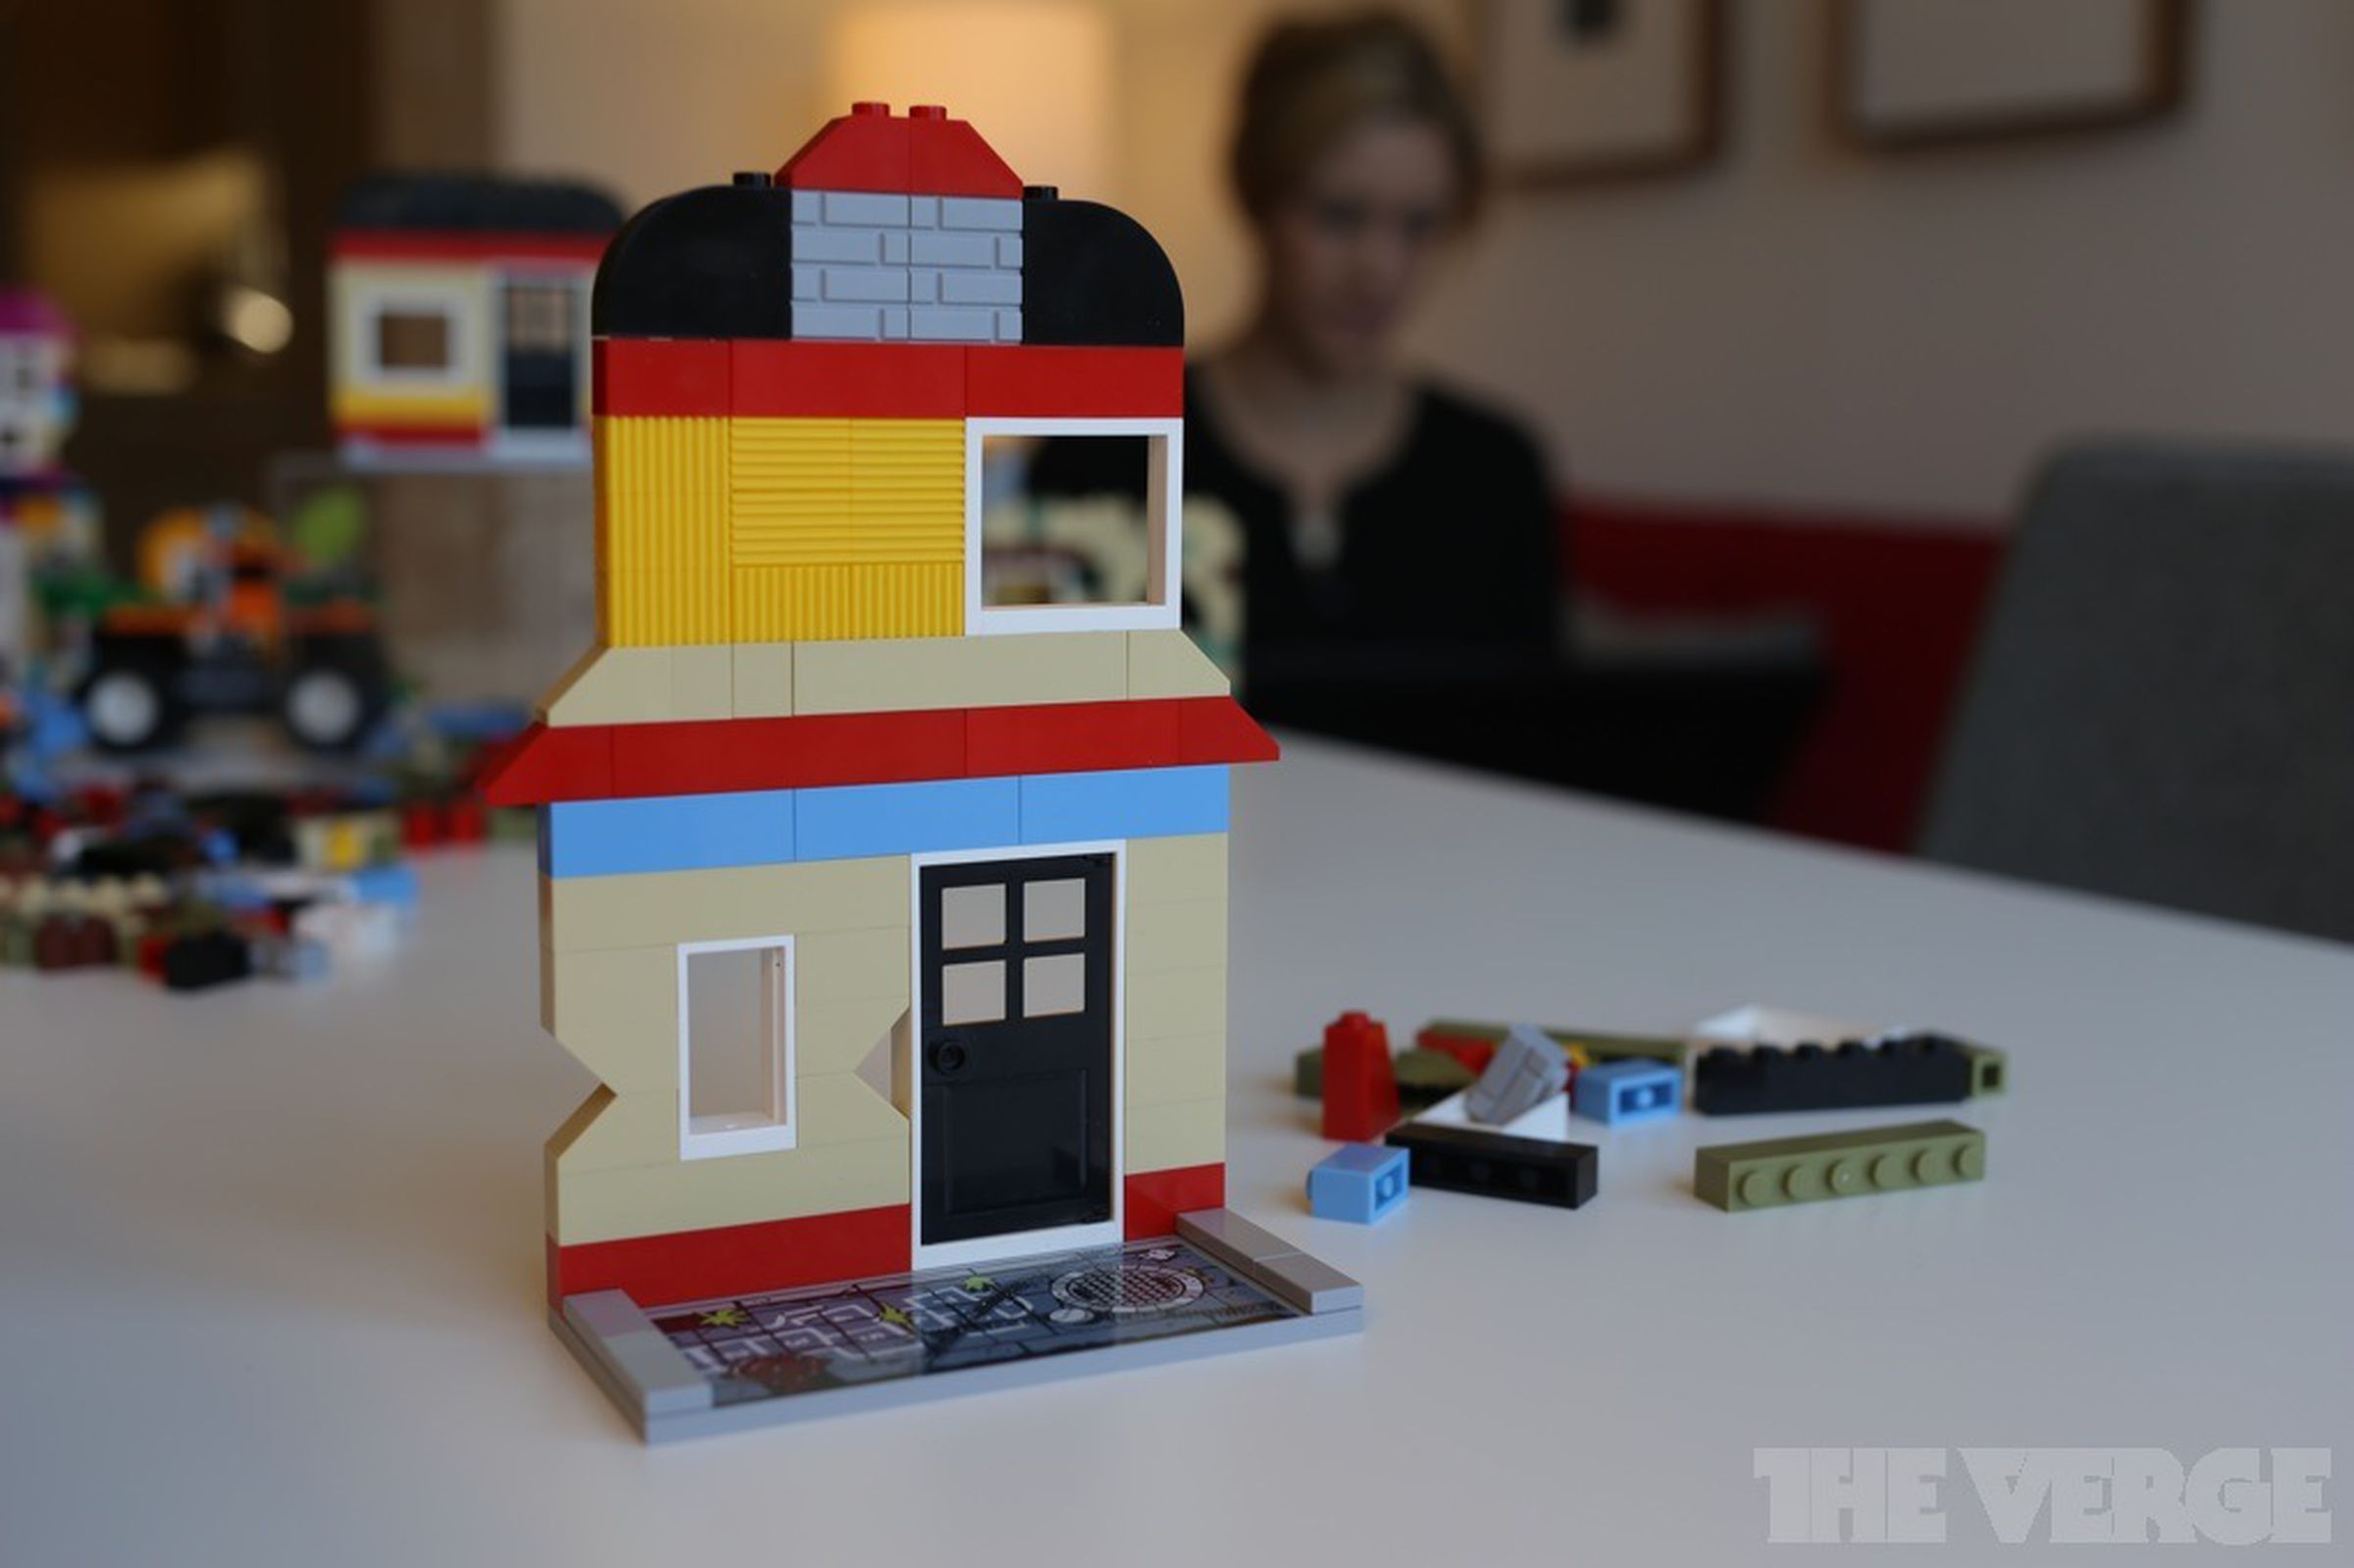 Lego Fusion augmented reality toys